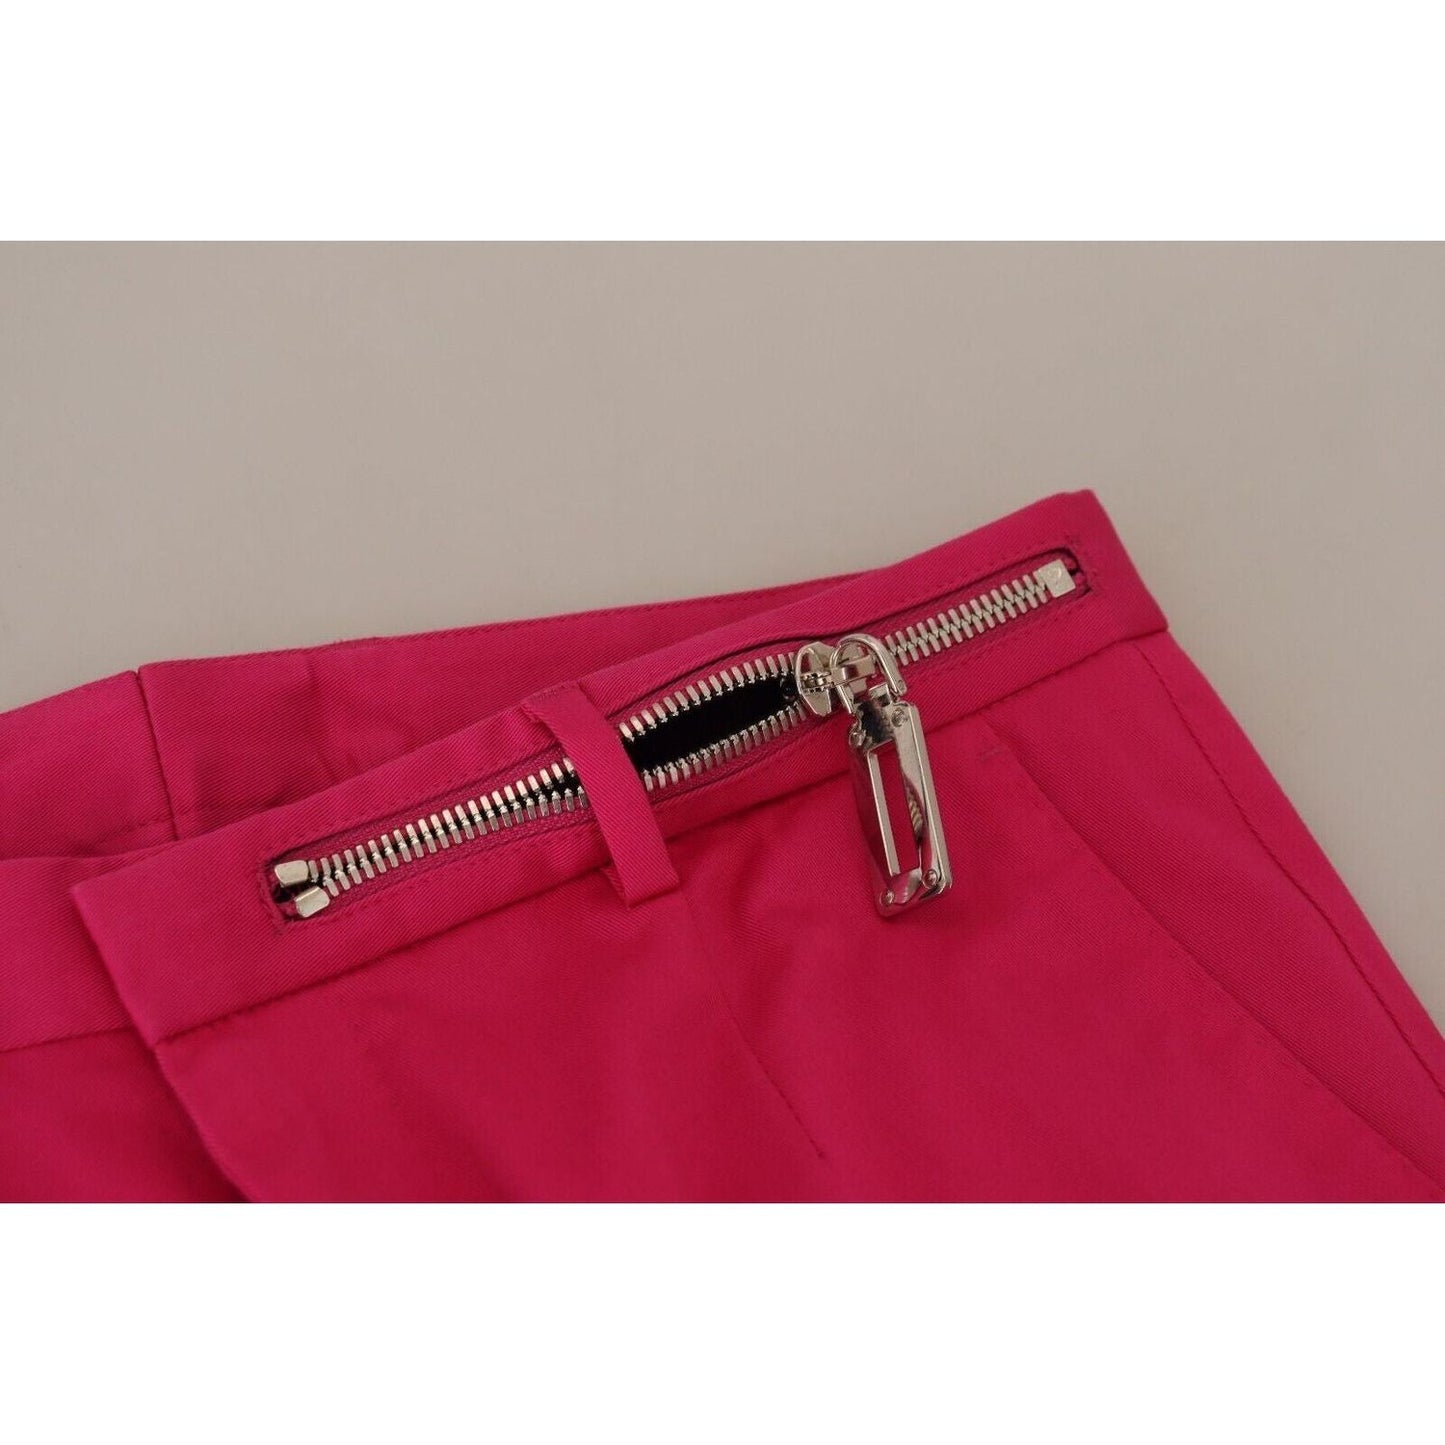 Dolce & GabbanaChic Pink Cotton Blend TrousersMcRichard Designer Brands£369.00